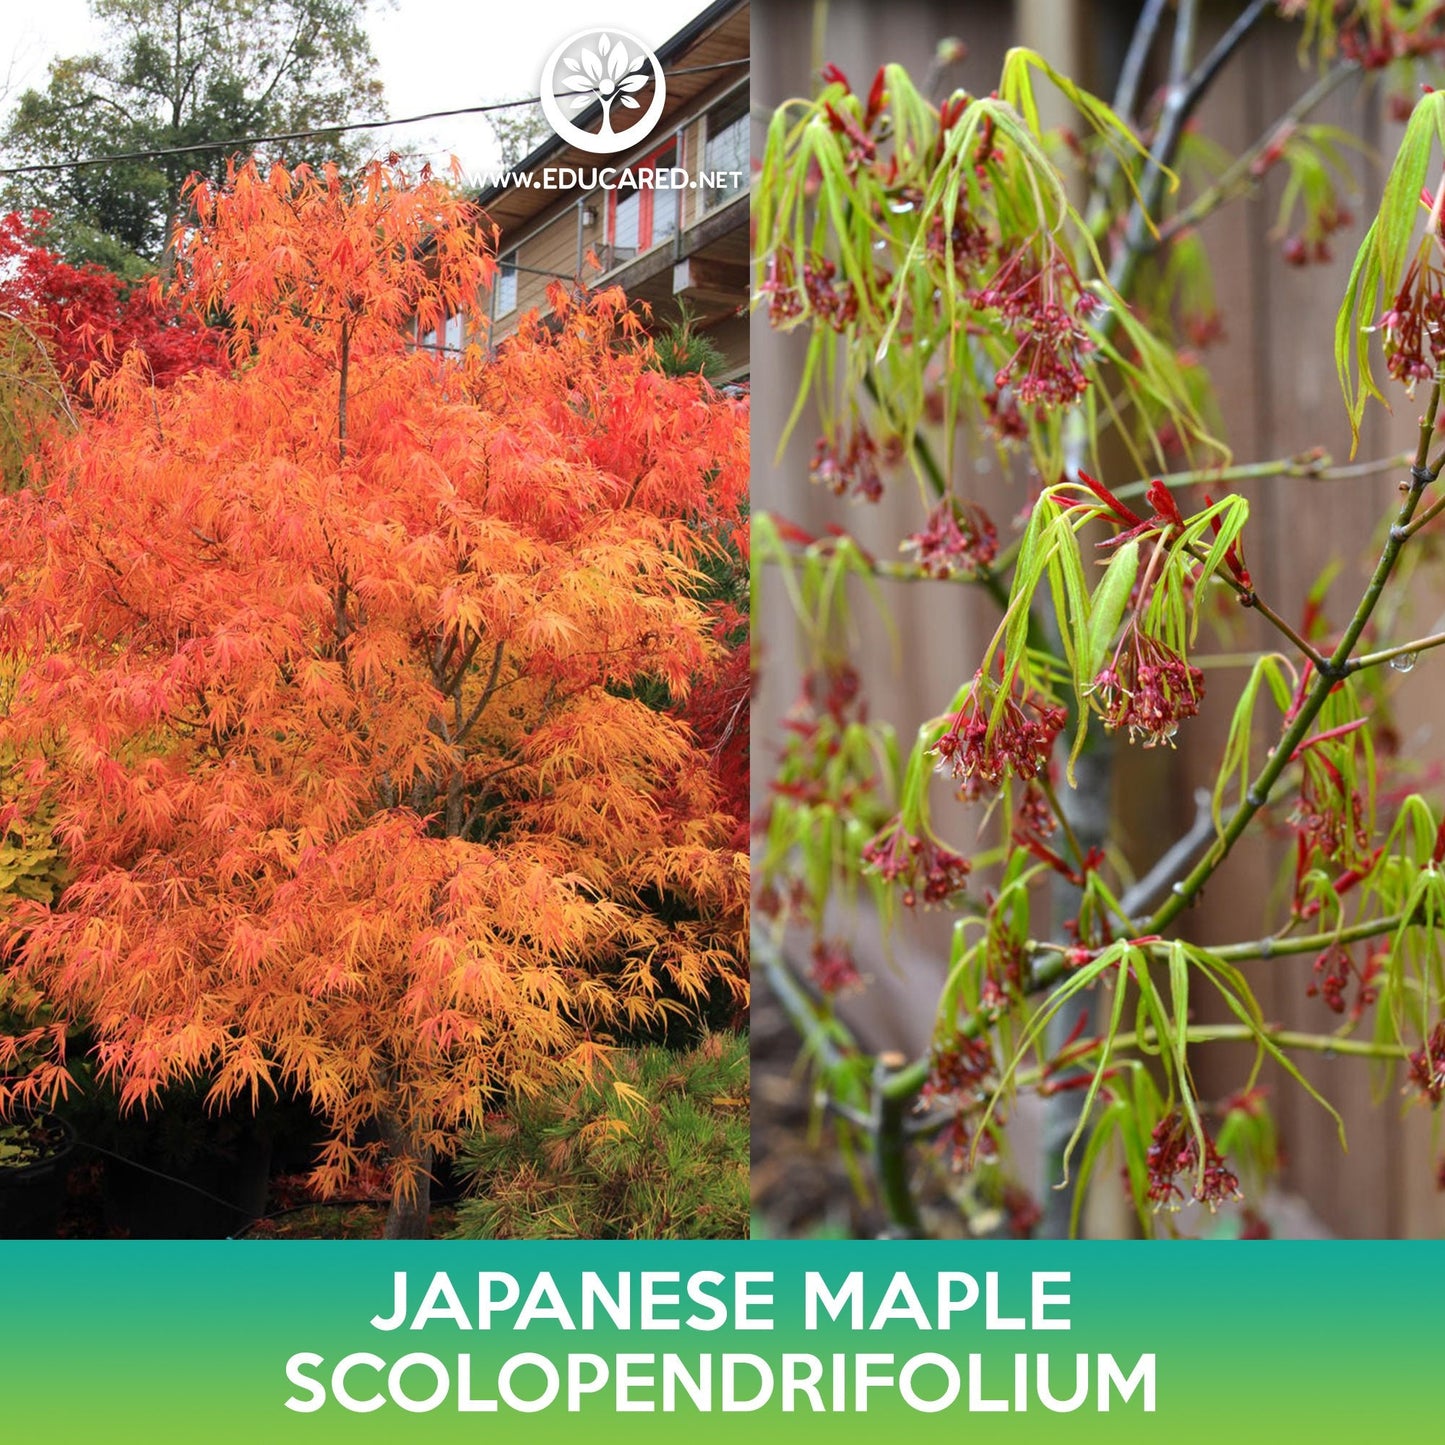 Scolopendrifolium Japanese Maple Seeds, Acer palmatum scolopendrifolium